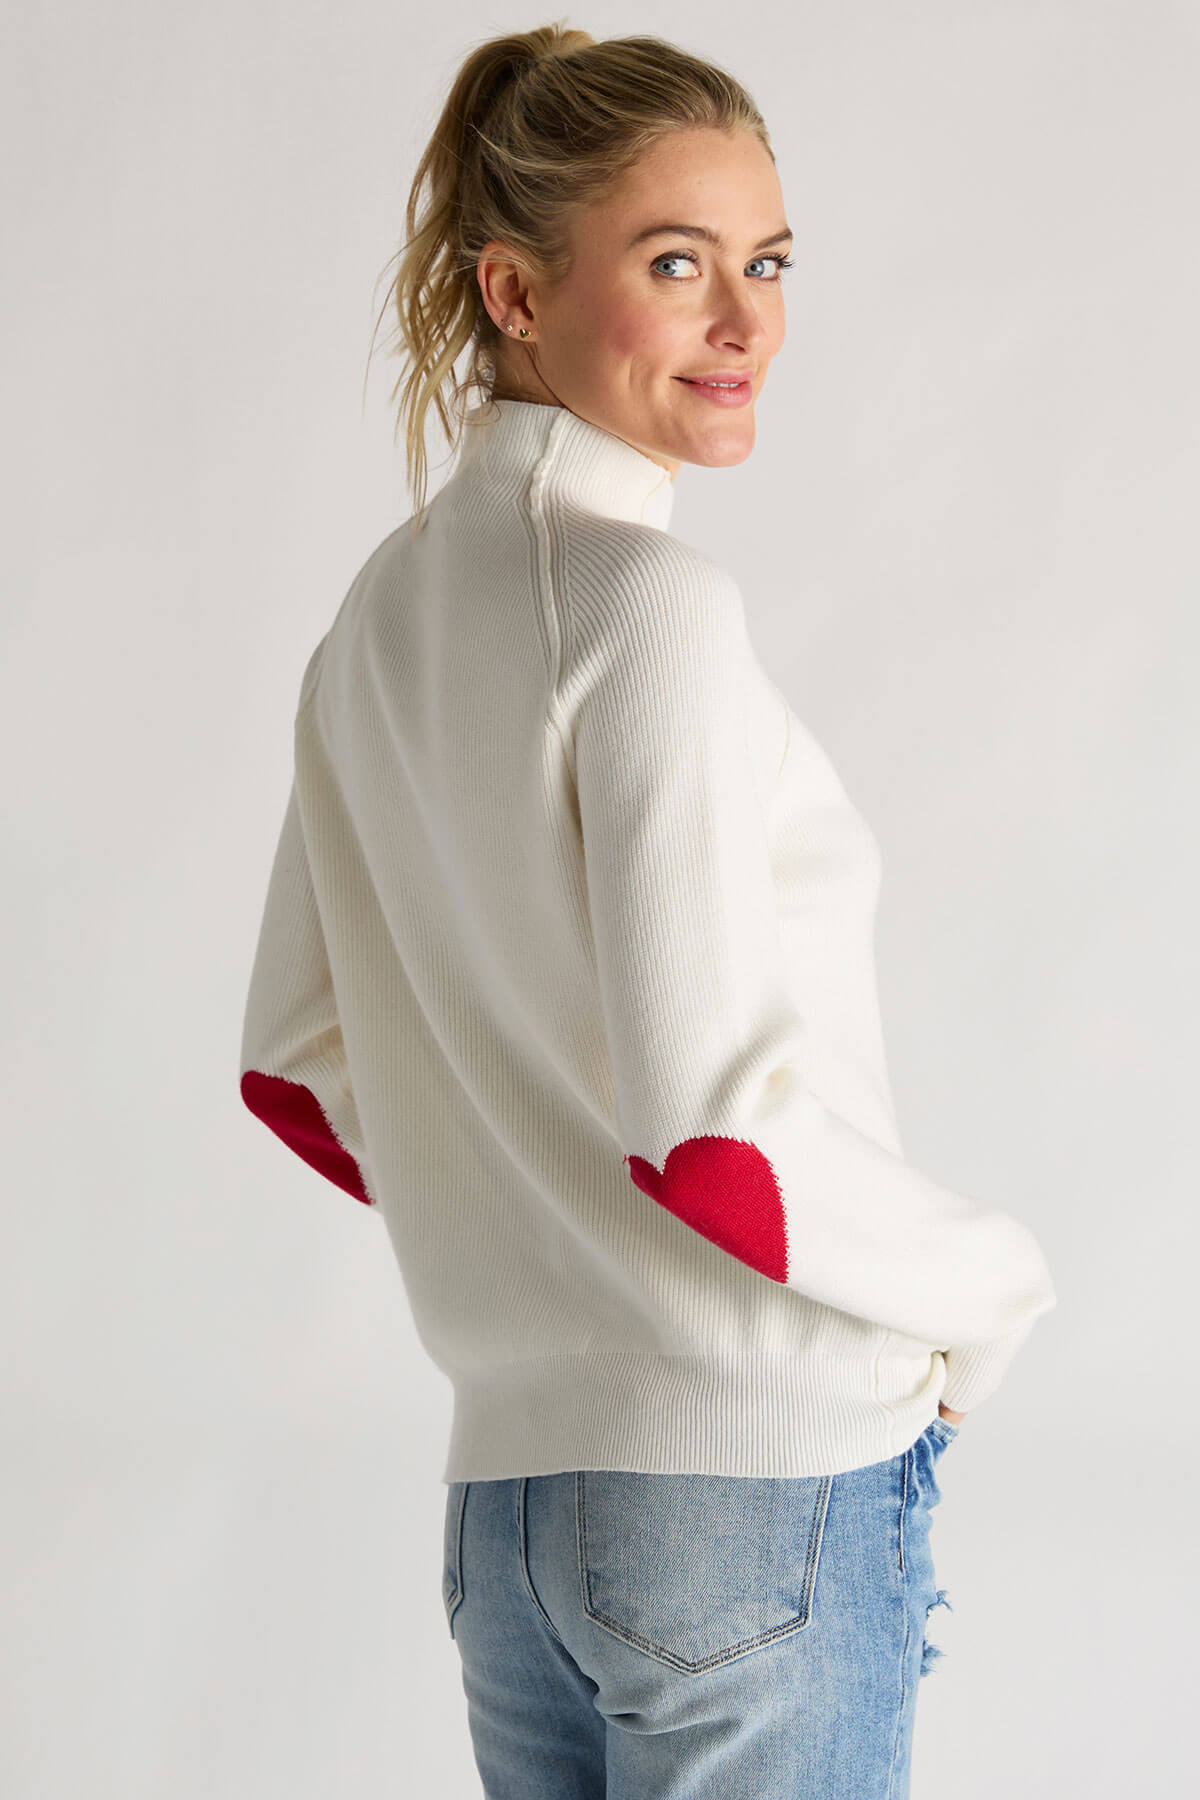 Cezele Heart Sleeve Sweater